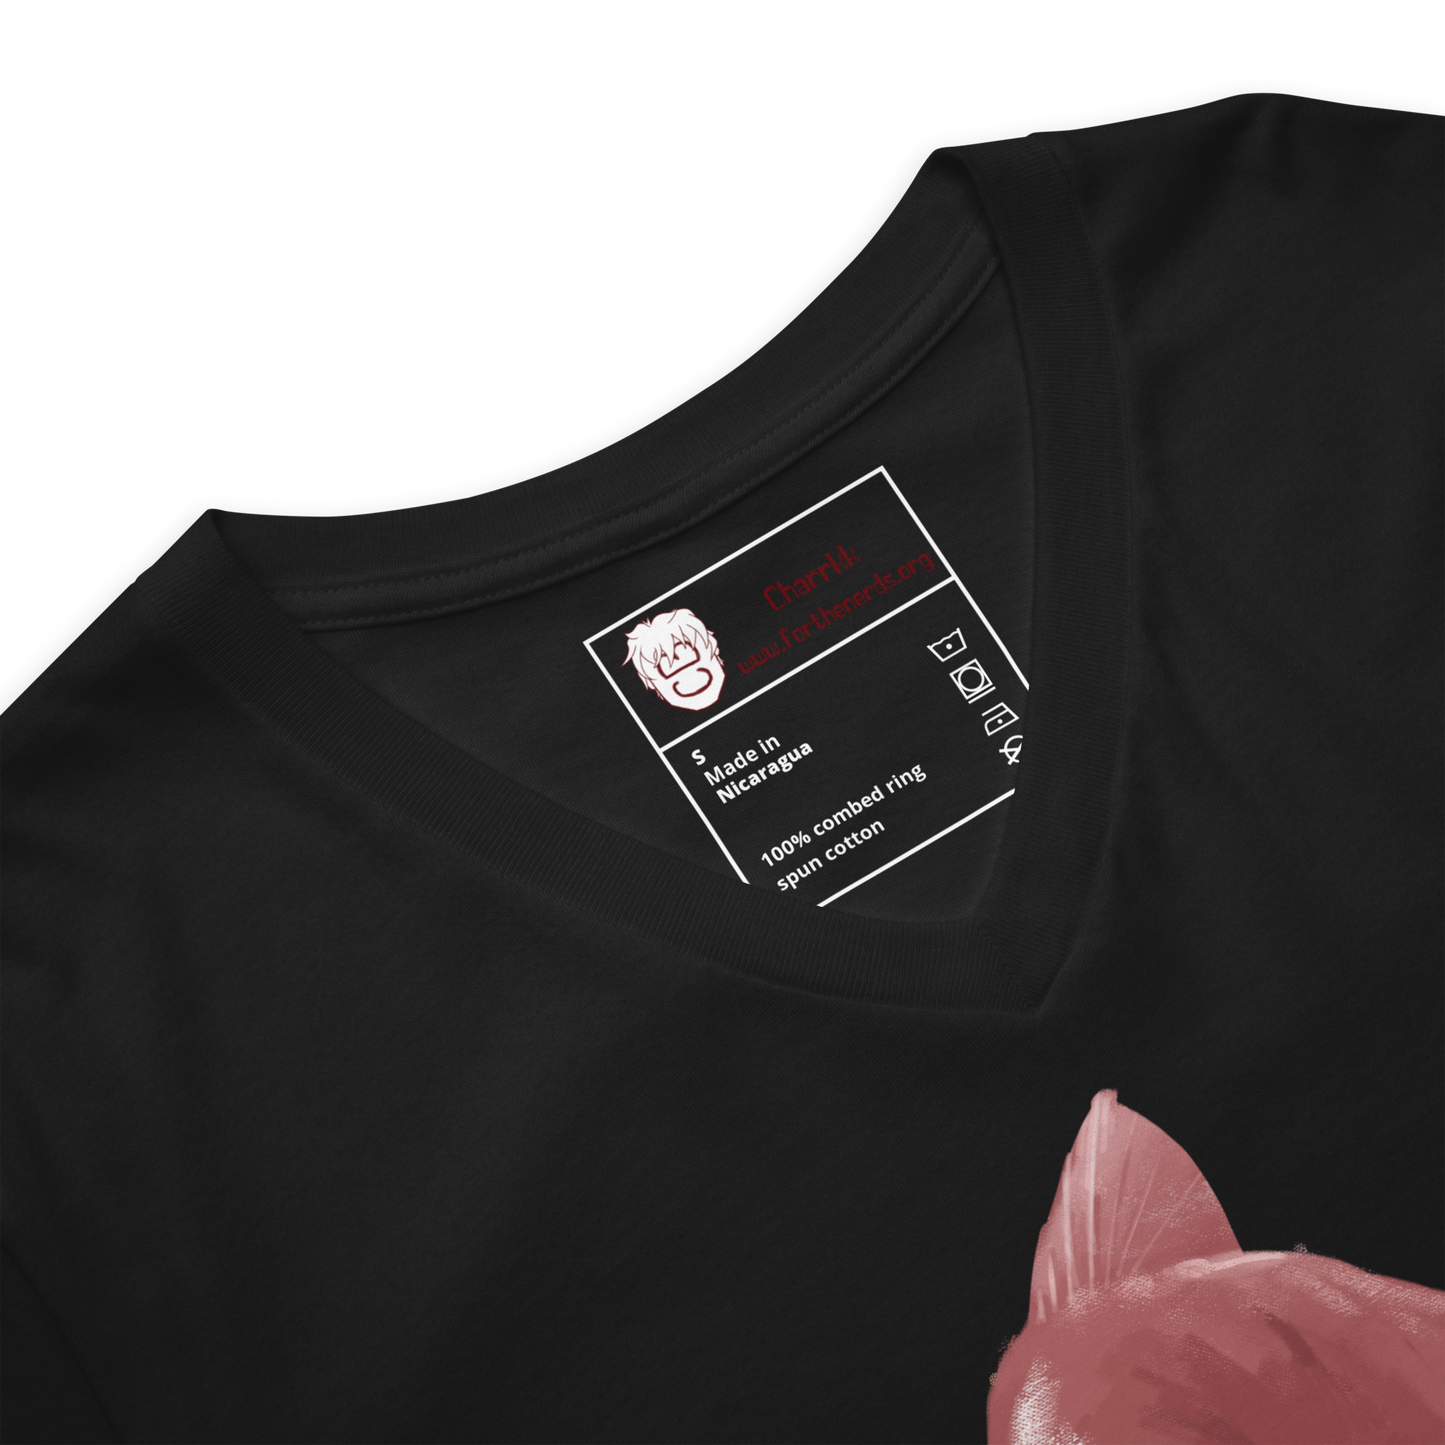 "Slammin' Salmon" Short Sleeve V-Neck T-Shirt